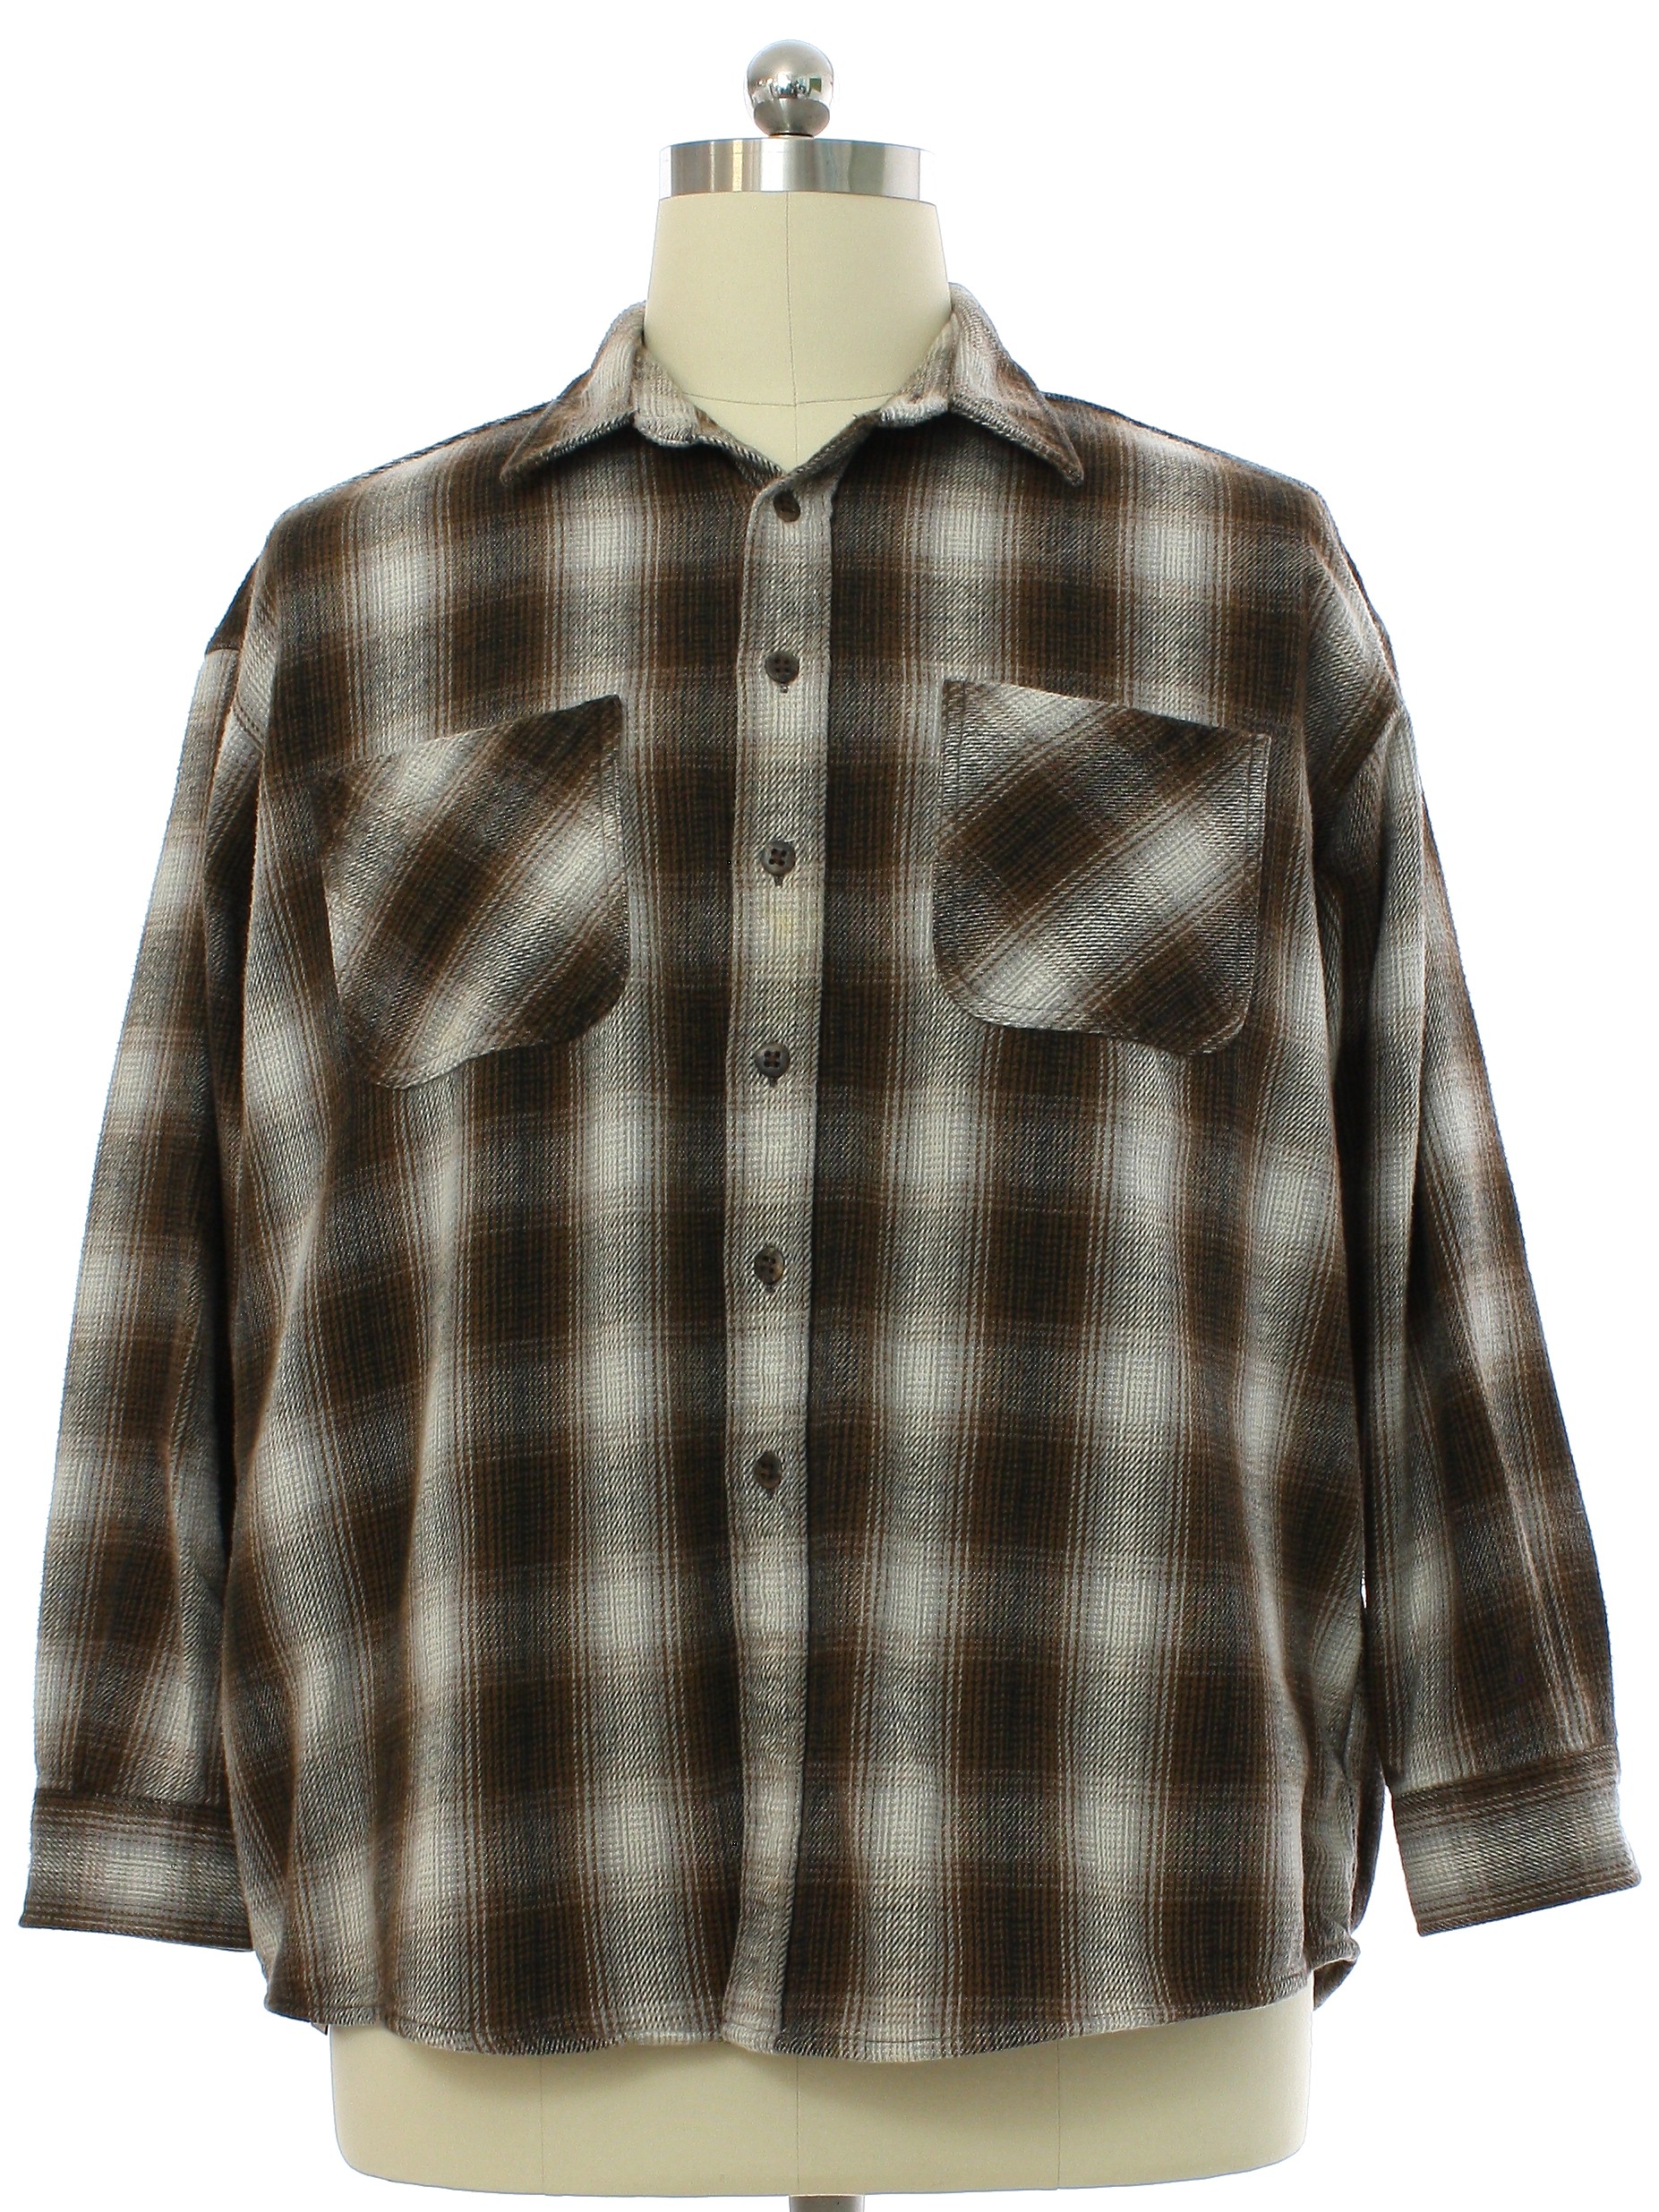 Retro 1990's Shirt (St Johns Bay) : 90s -St Johns Bay- Mens brown, gray ...